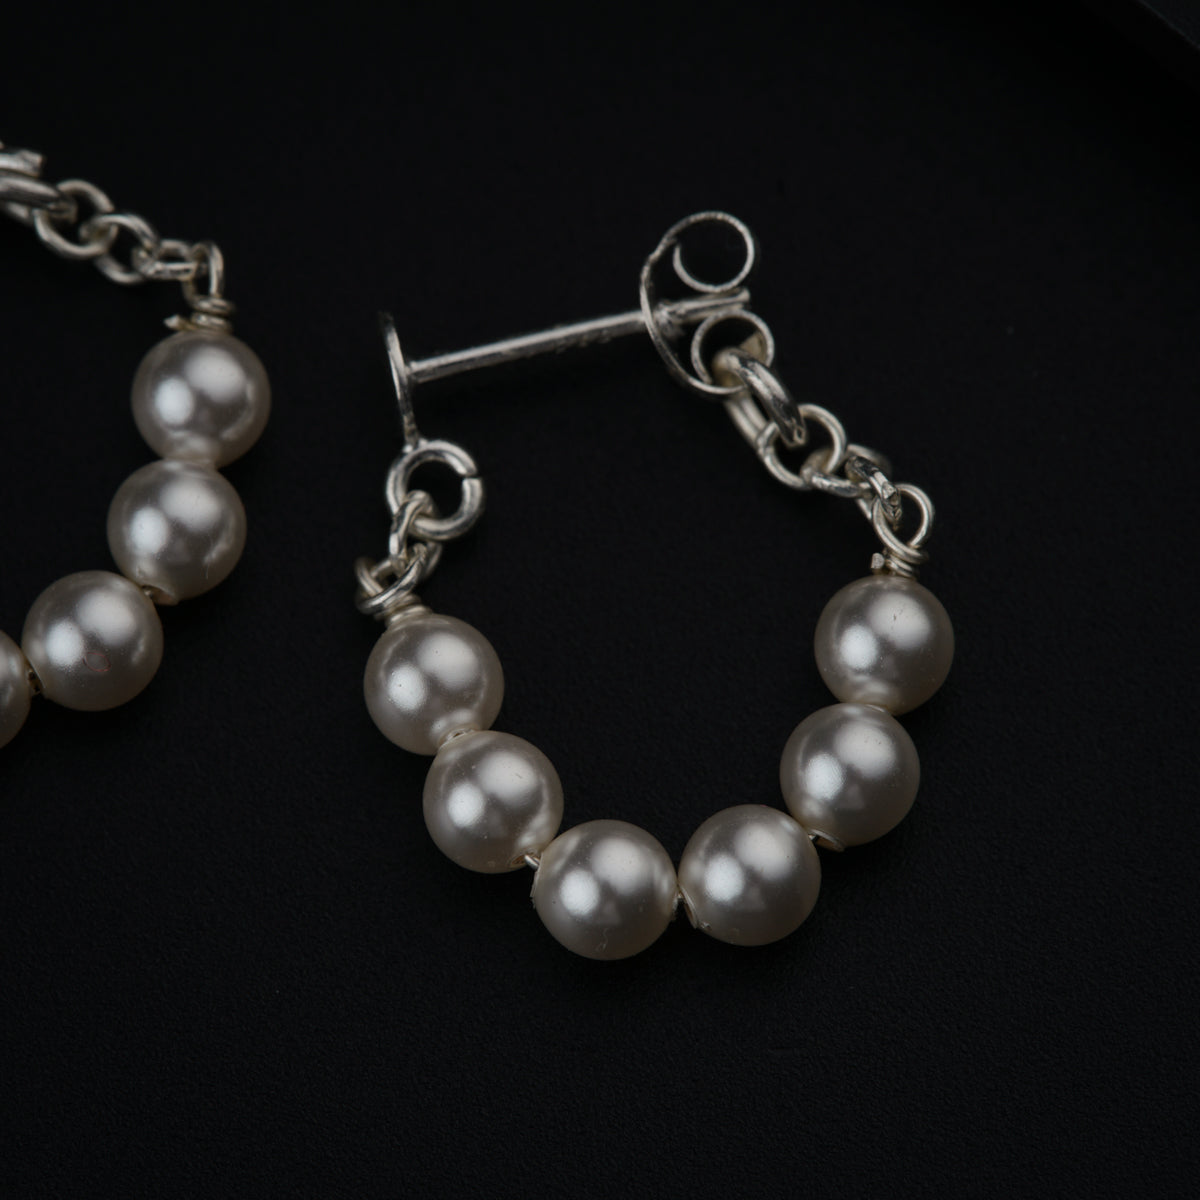 Buy Online Silver Earrings | Best Price In India